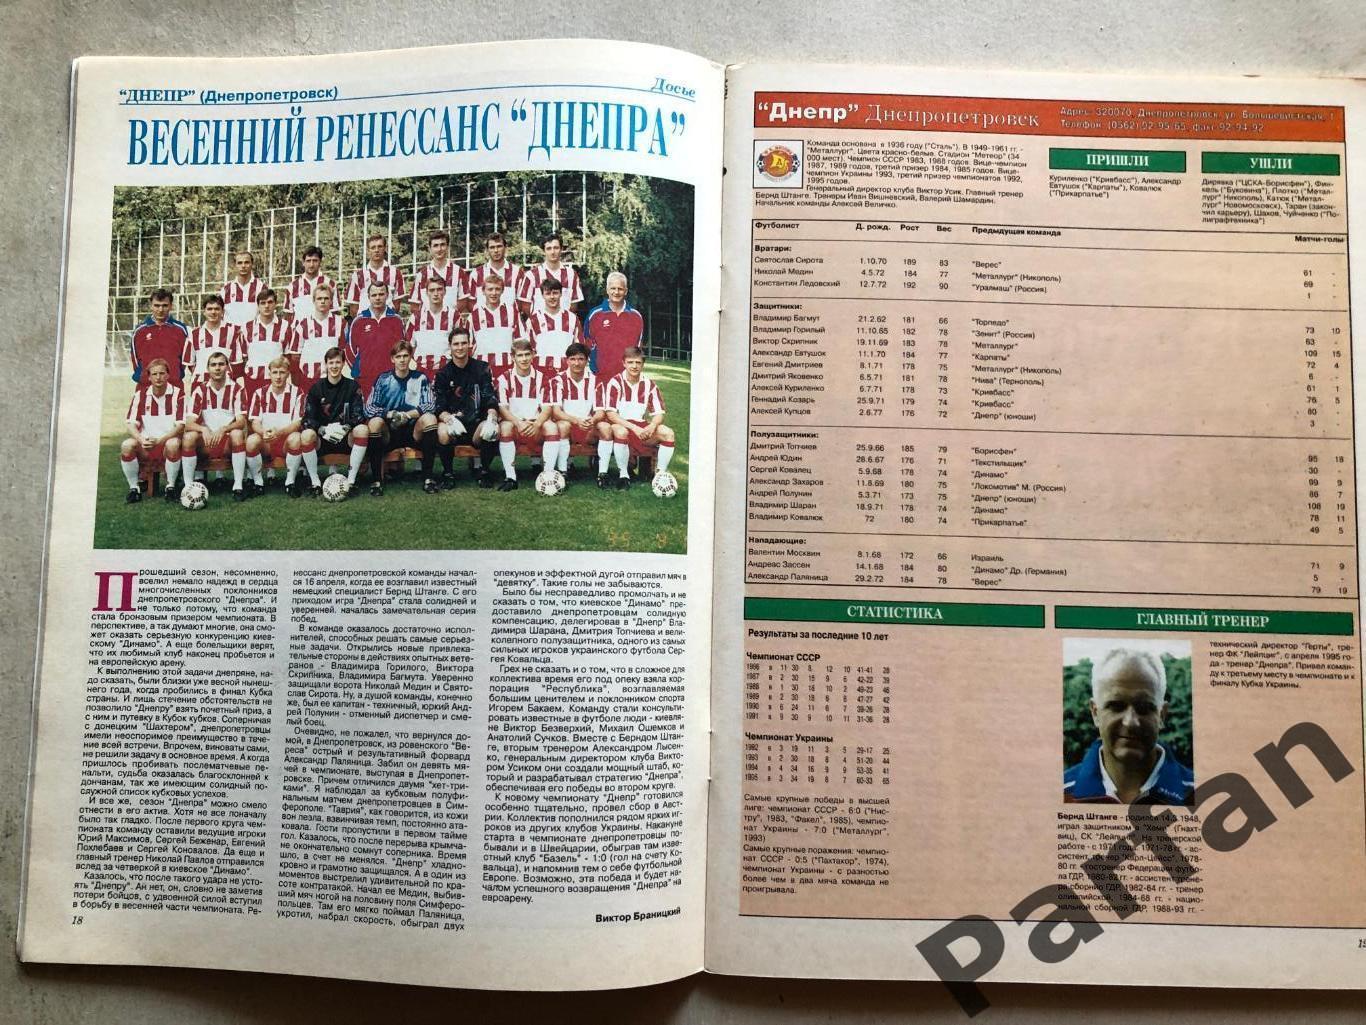 Мир Футбола Україна Вища ліга Чемпіонат 1995/96 Спецвипуск 3